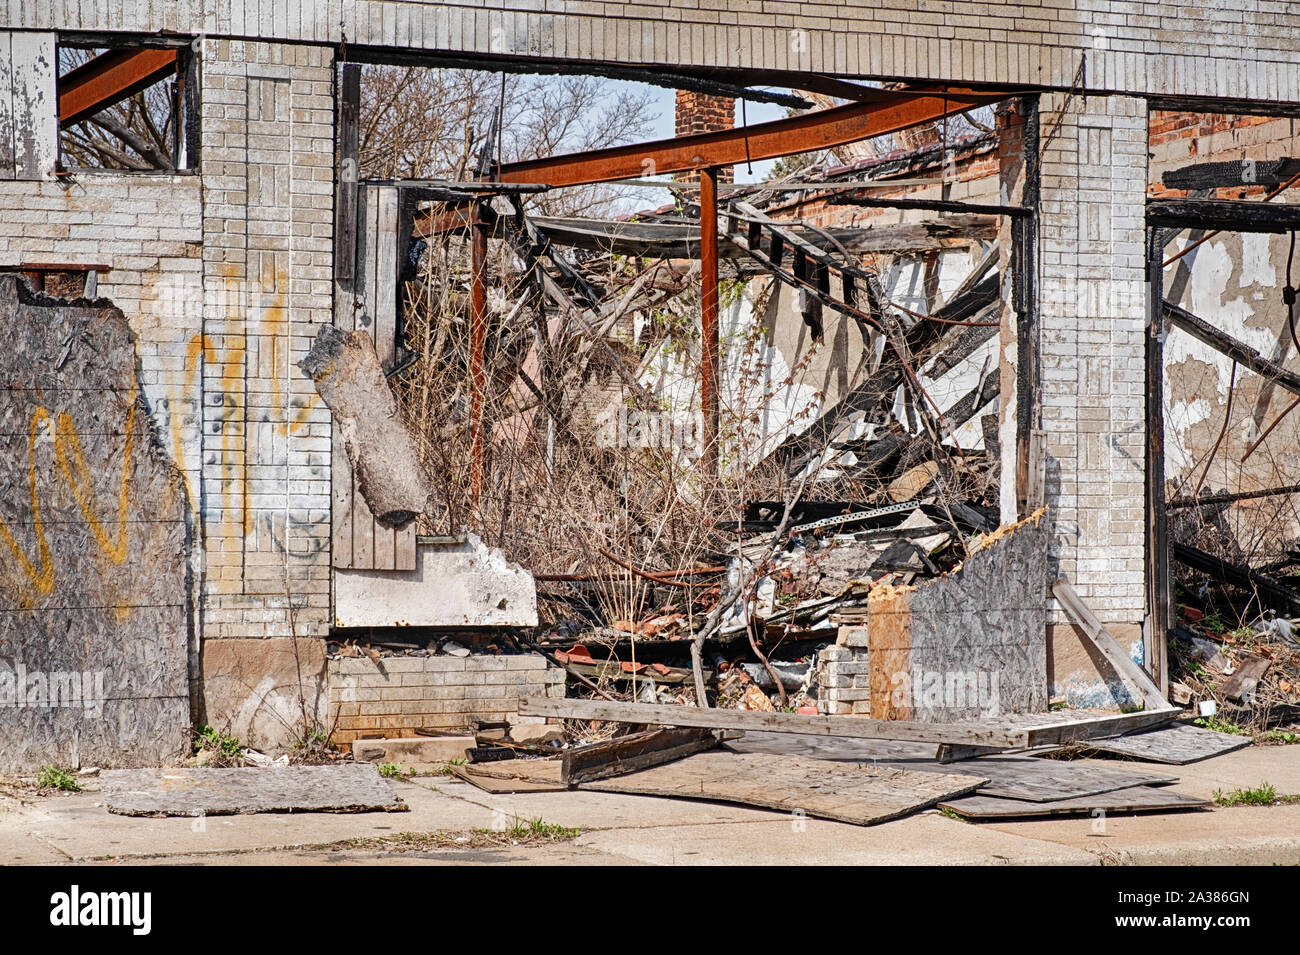 DETROIT, Michigan - 27 Aprile 2019: una vetrina aperta mette in evidenza la urban piaga che affligge la città di Detroit. Foto Stock